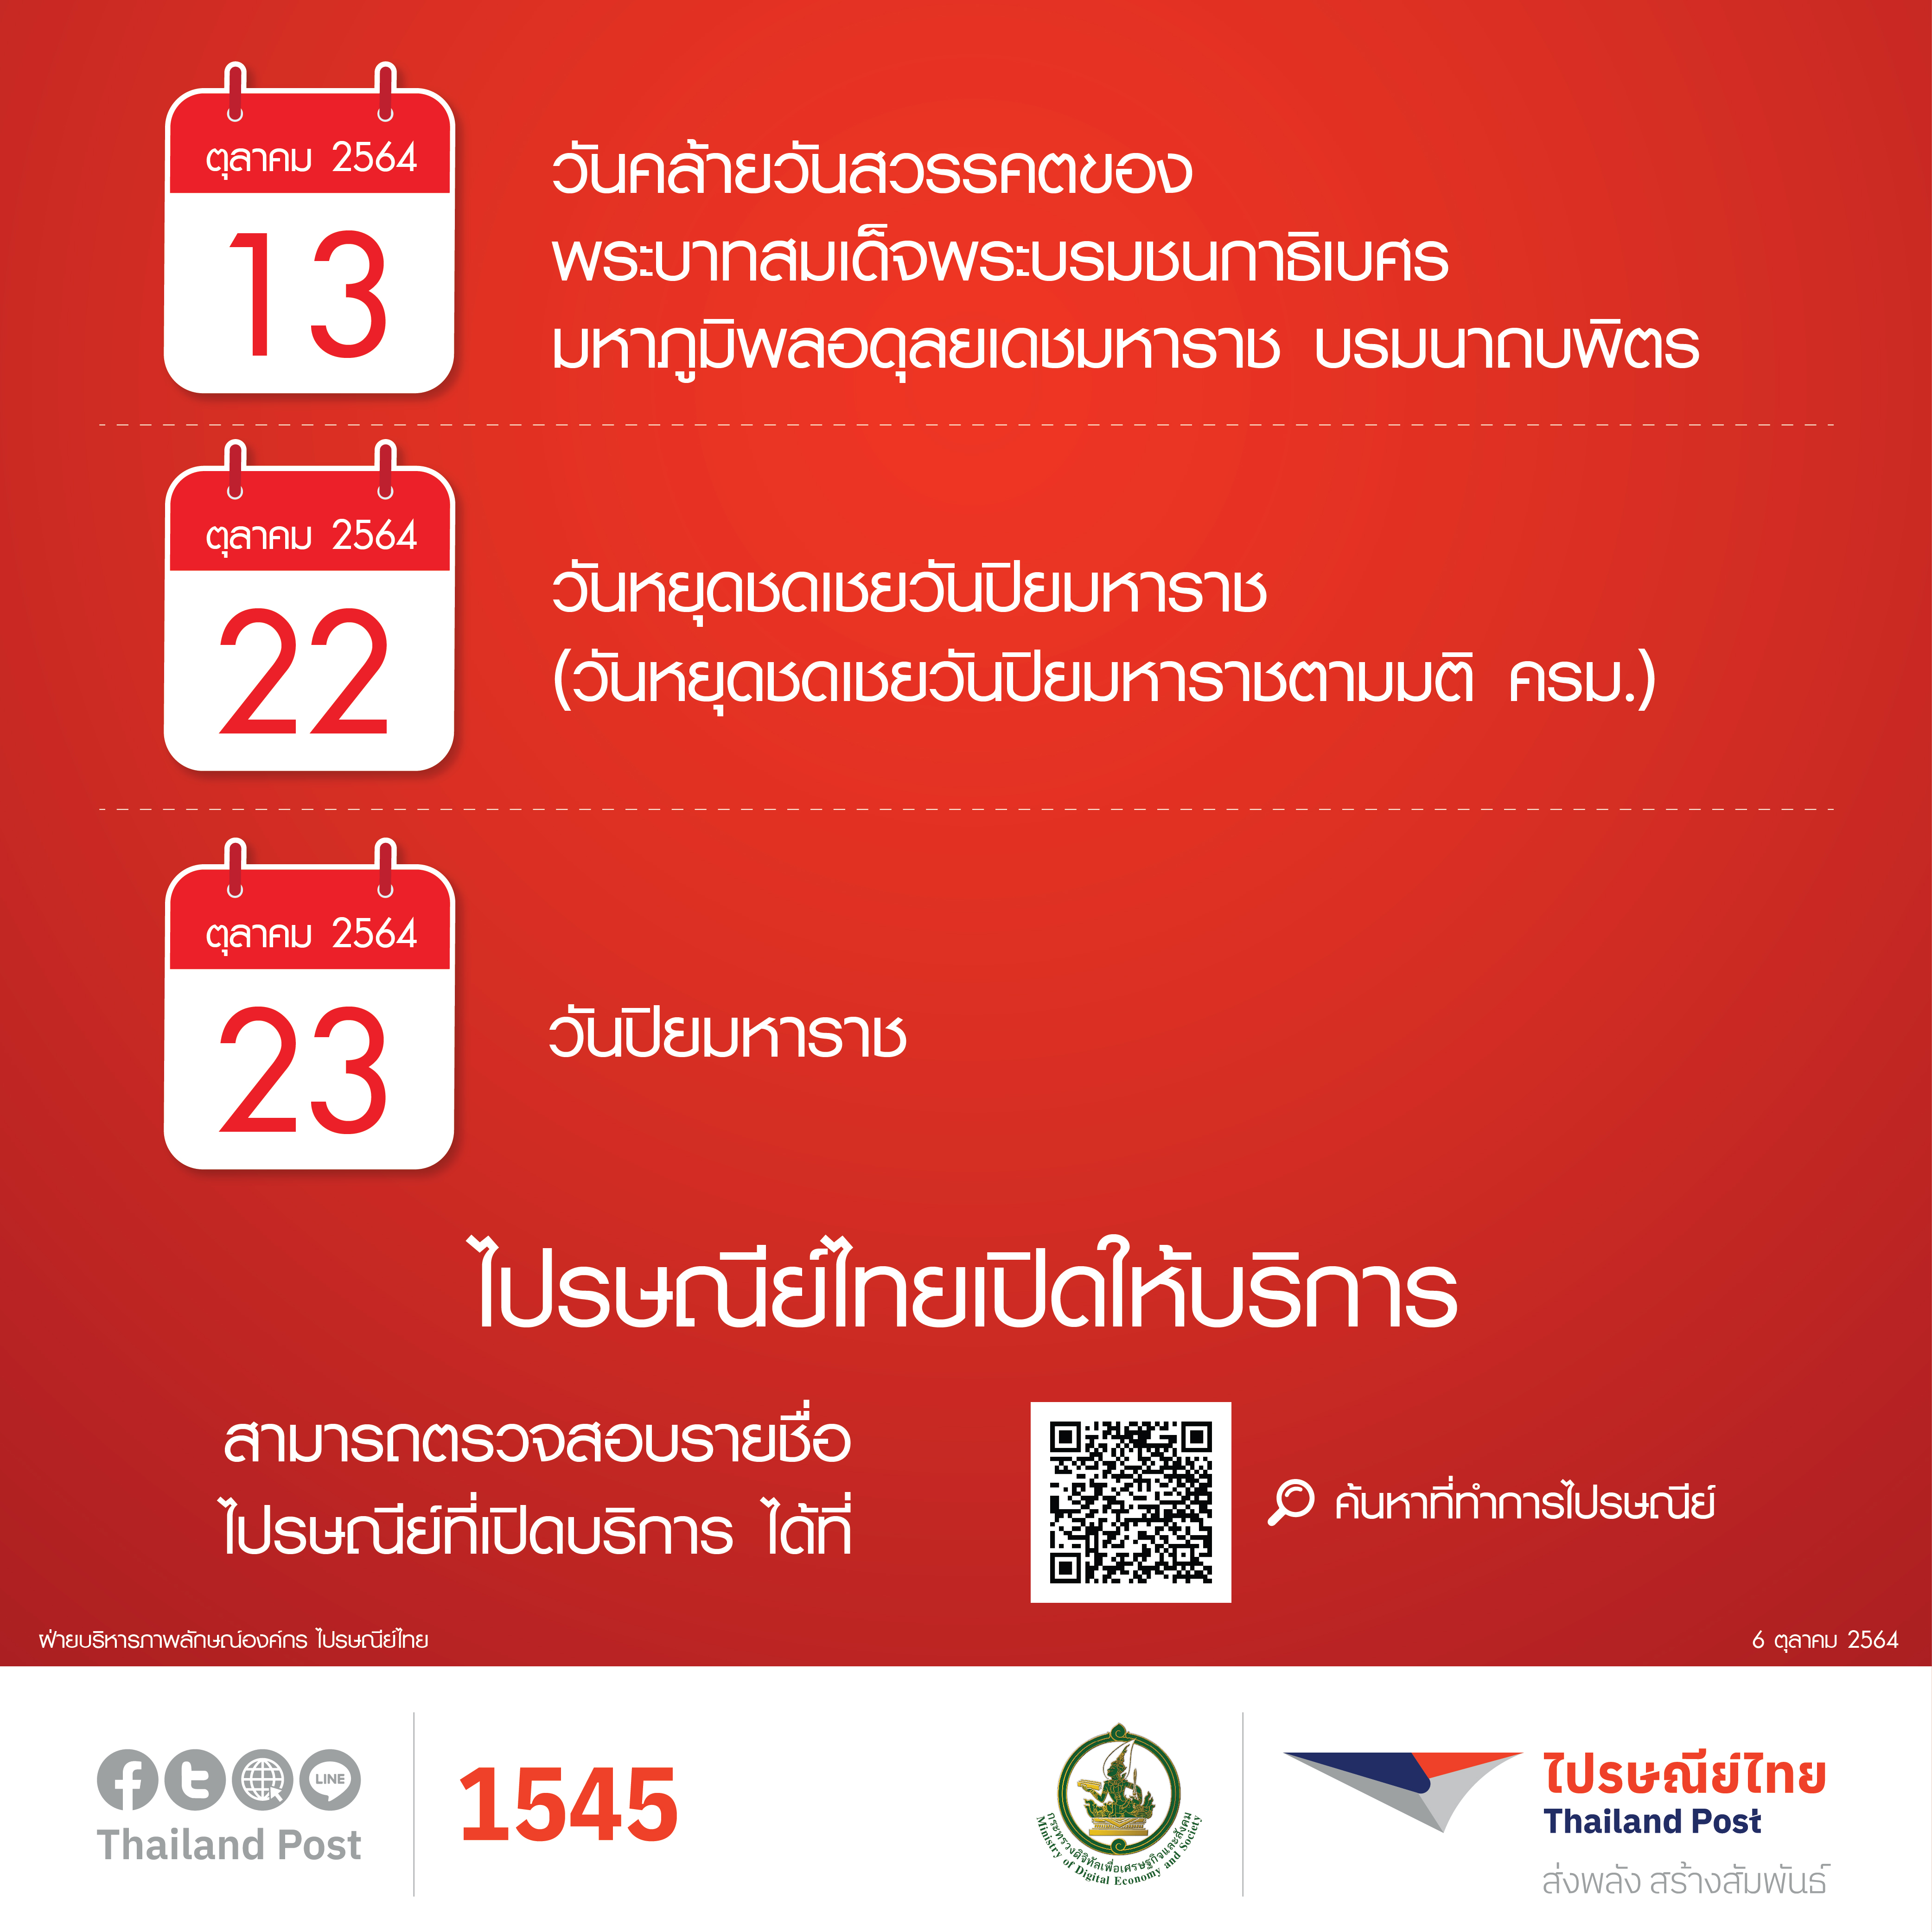 ไปรษณีย์ไทยเปิดให้บริการตามปกติในวันหยุดประจำเดือนตุลาคม 2564